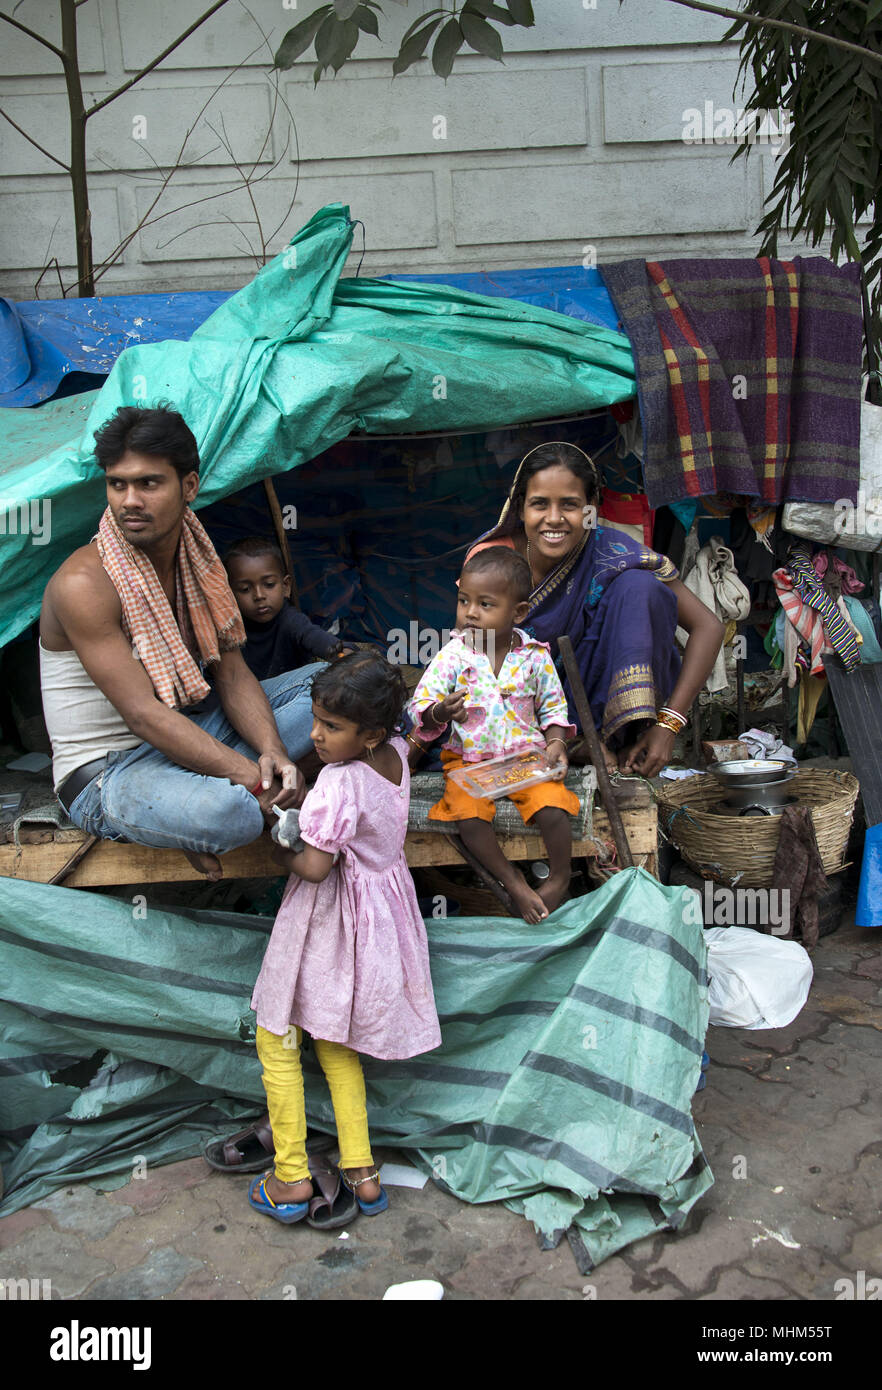 homeless family on streets of Kolkata, India Stock Photo